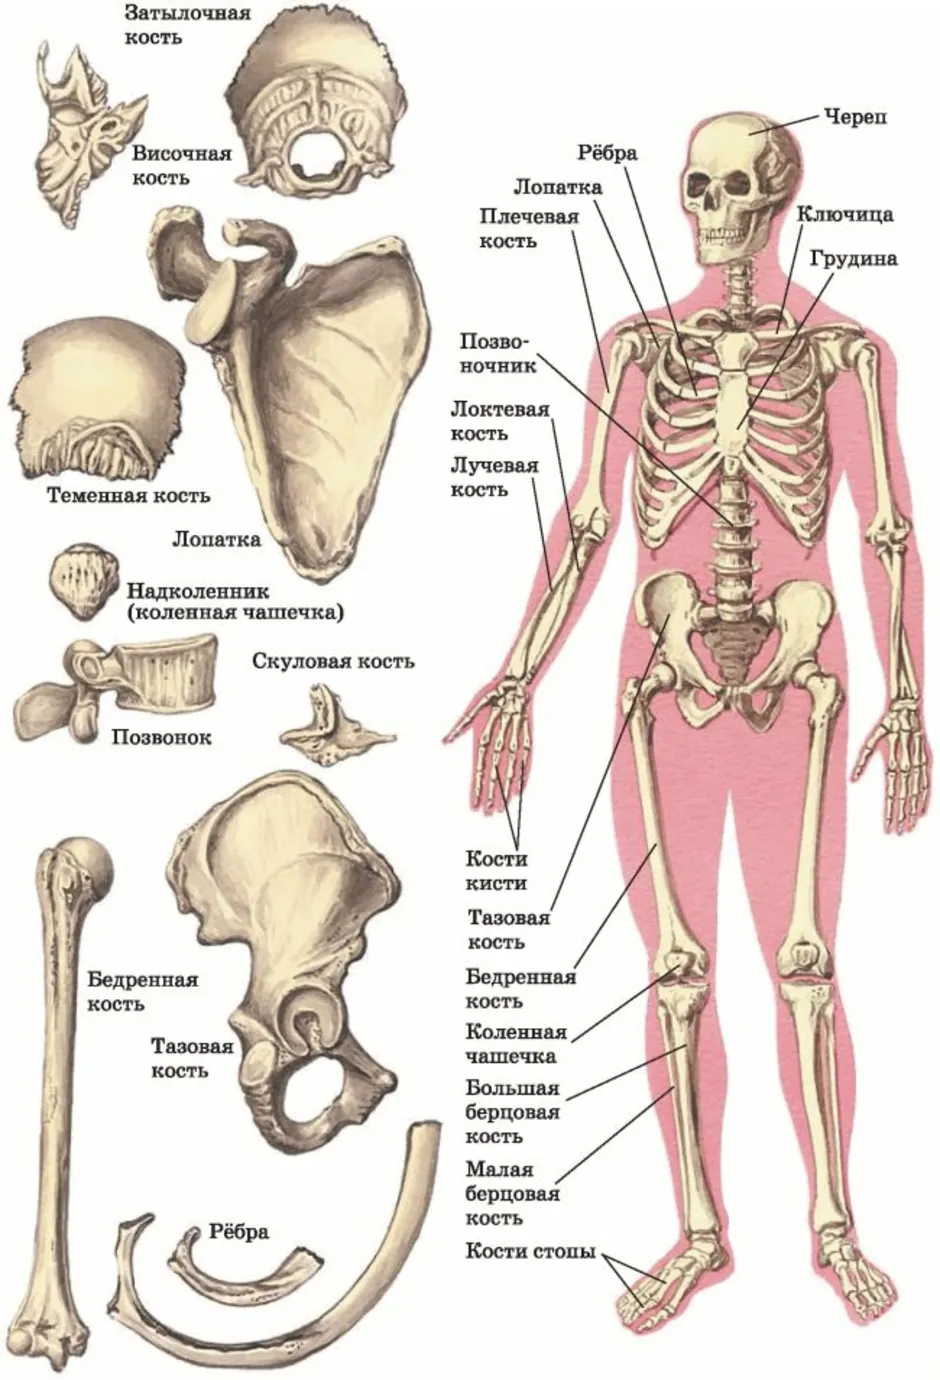 Человек часть биология. Скелет человека с описанием костей. Название частей кости человека. Строение костей человека с названиями. Название костей скелета туловища.